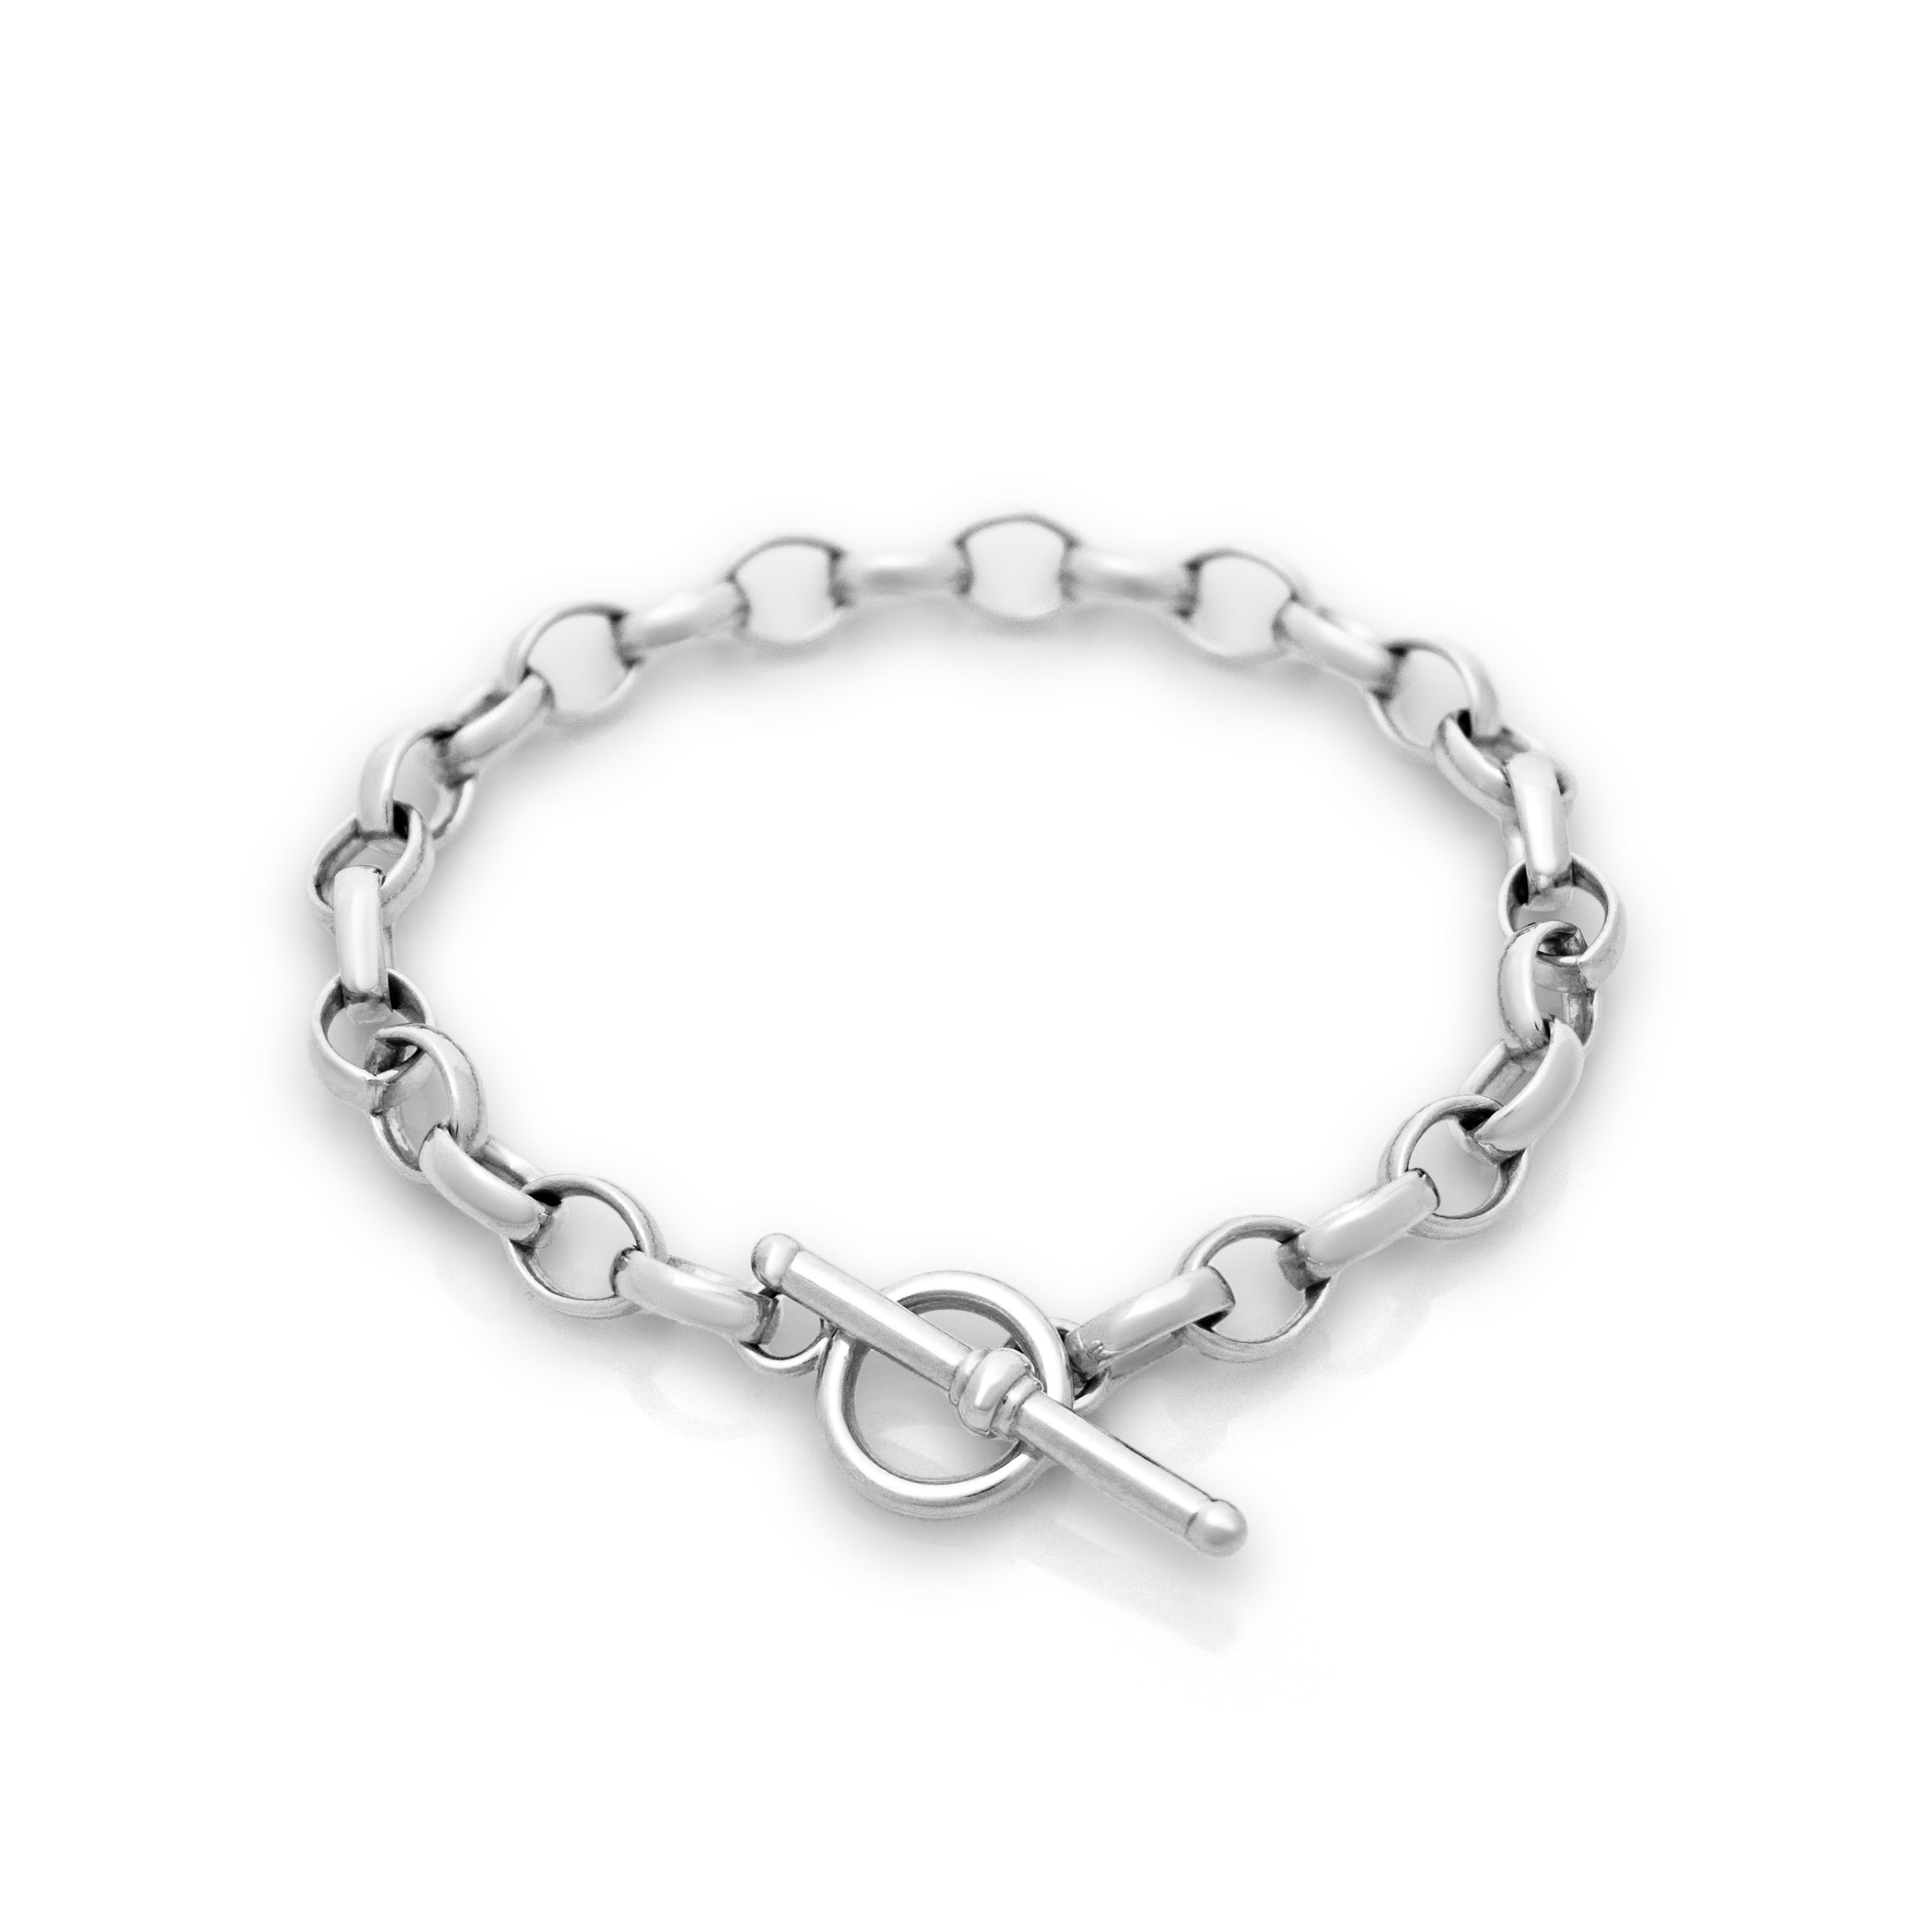 Silver belcher t-bar bracelet. Solid silver bracelet. Silver chain bracelet. T-bar bracelet. T-bar clasp. Belcher chain bracelet. Serena Ansell Jewellery. Fine jewellery. 